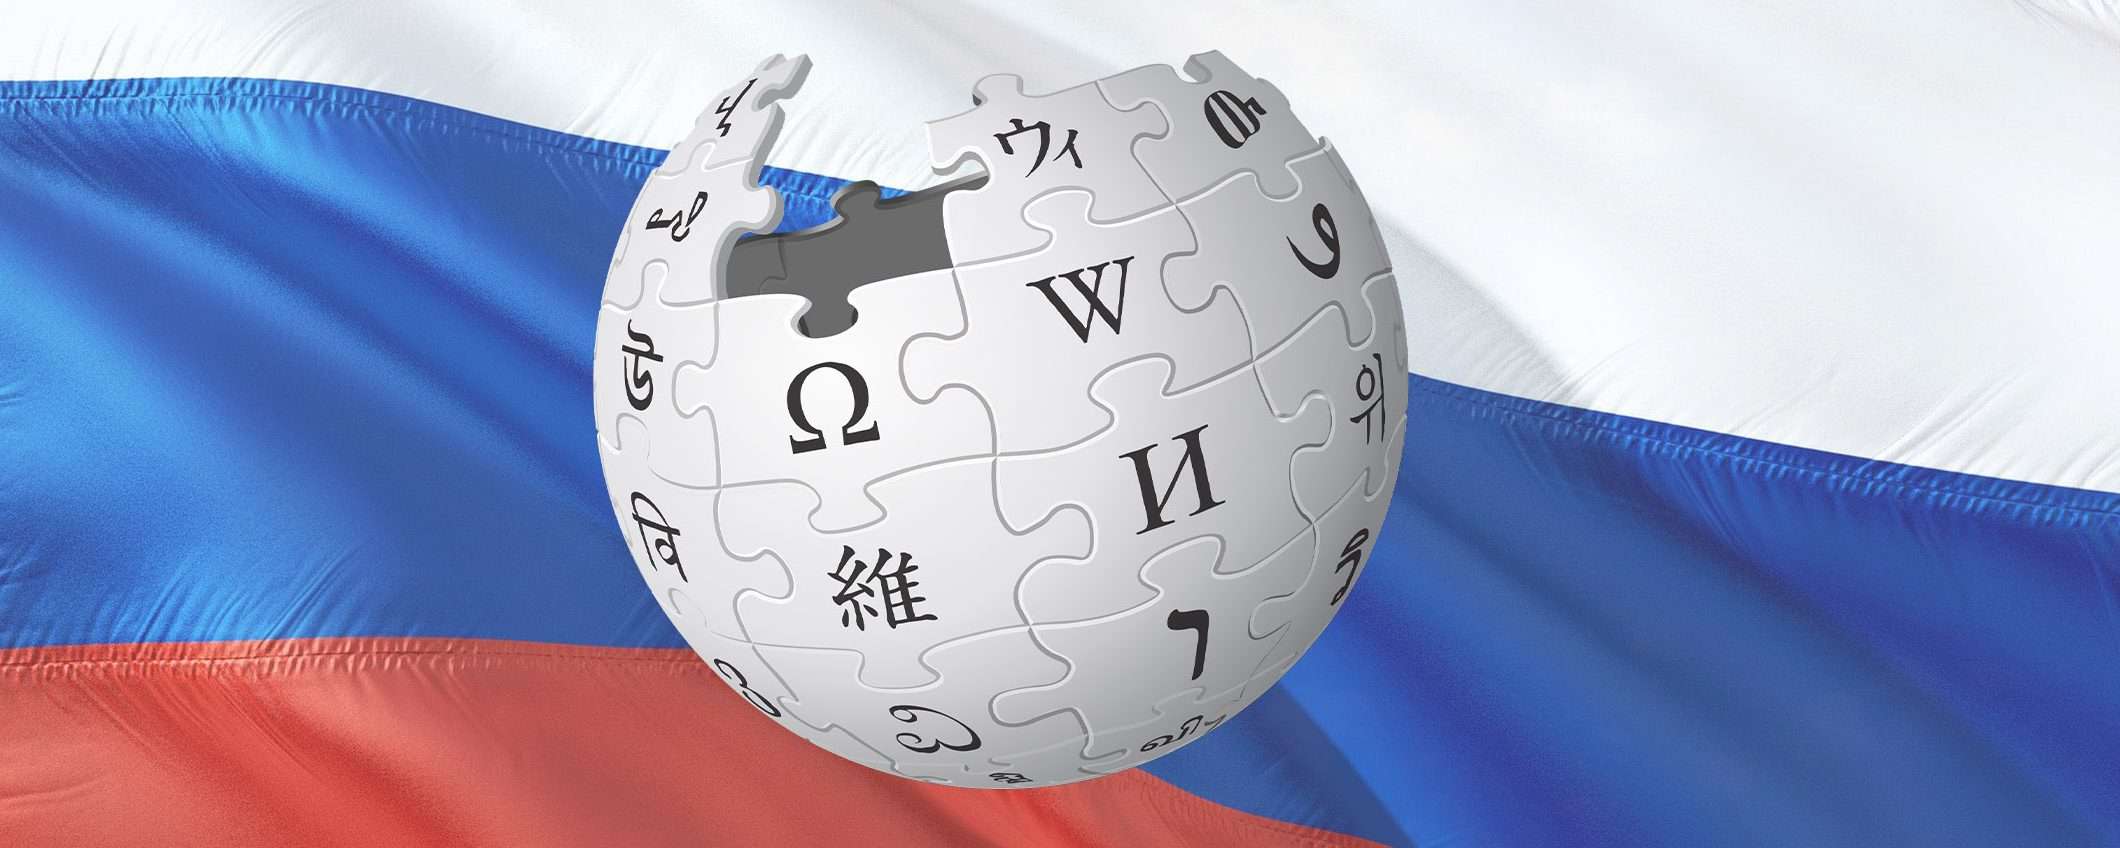 Noto editor di Wikipedia arrestato in Bielorussia